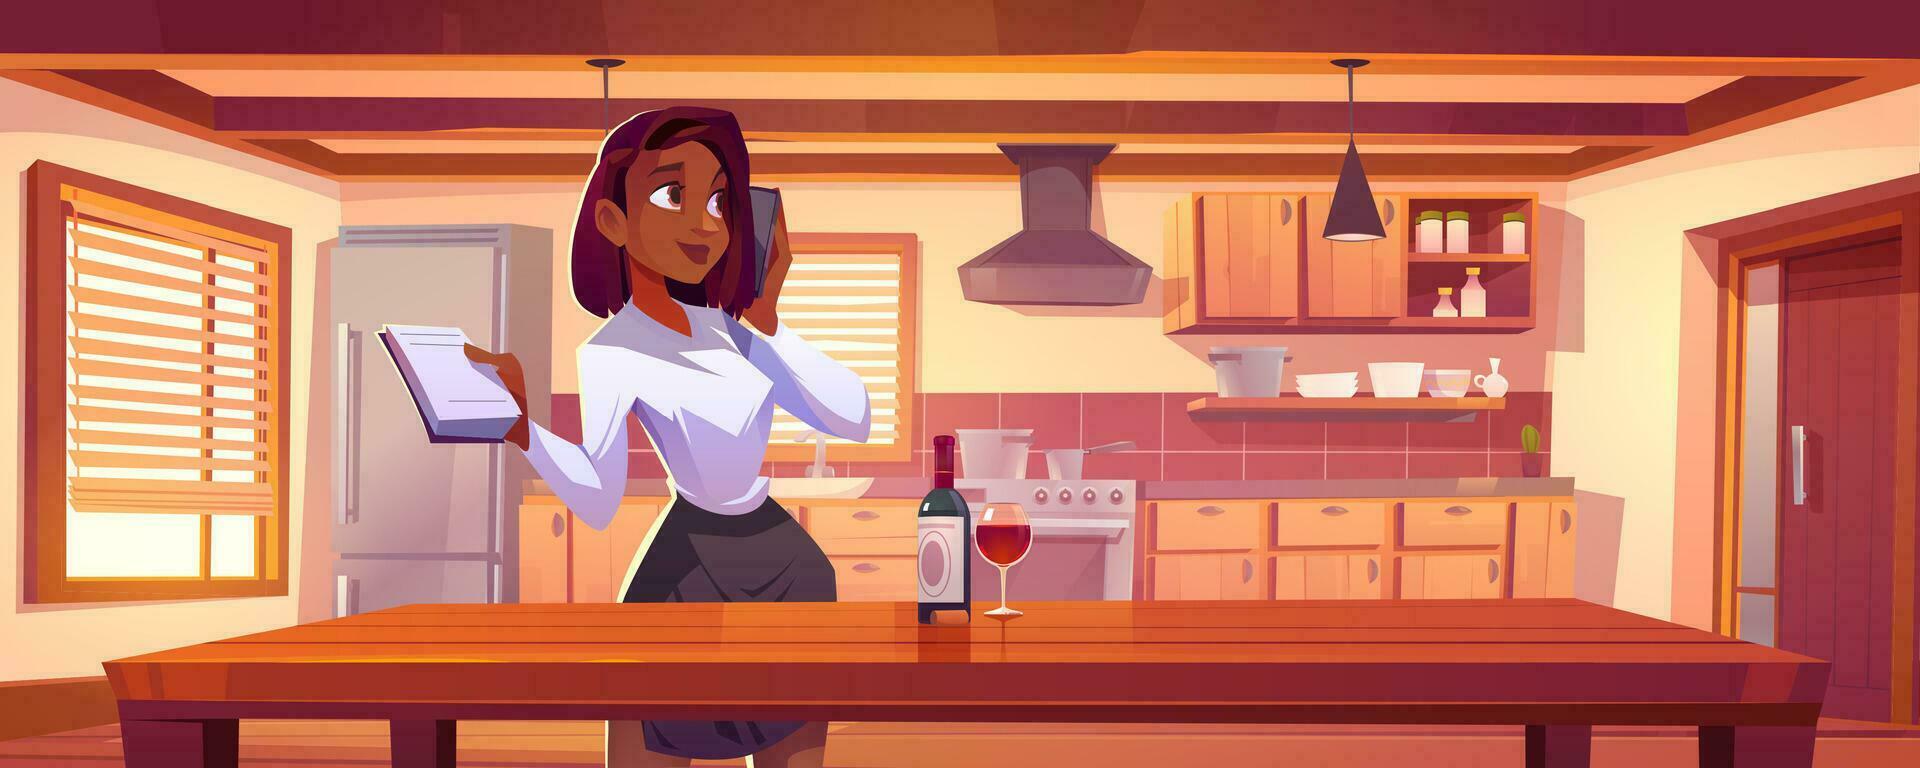 svart kvinna stående nära kök tabell bakgrund vektor